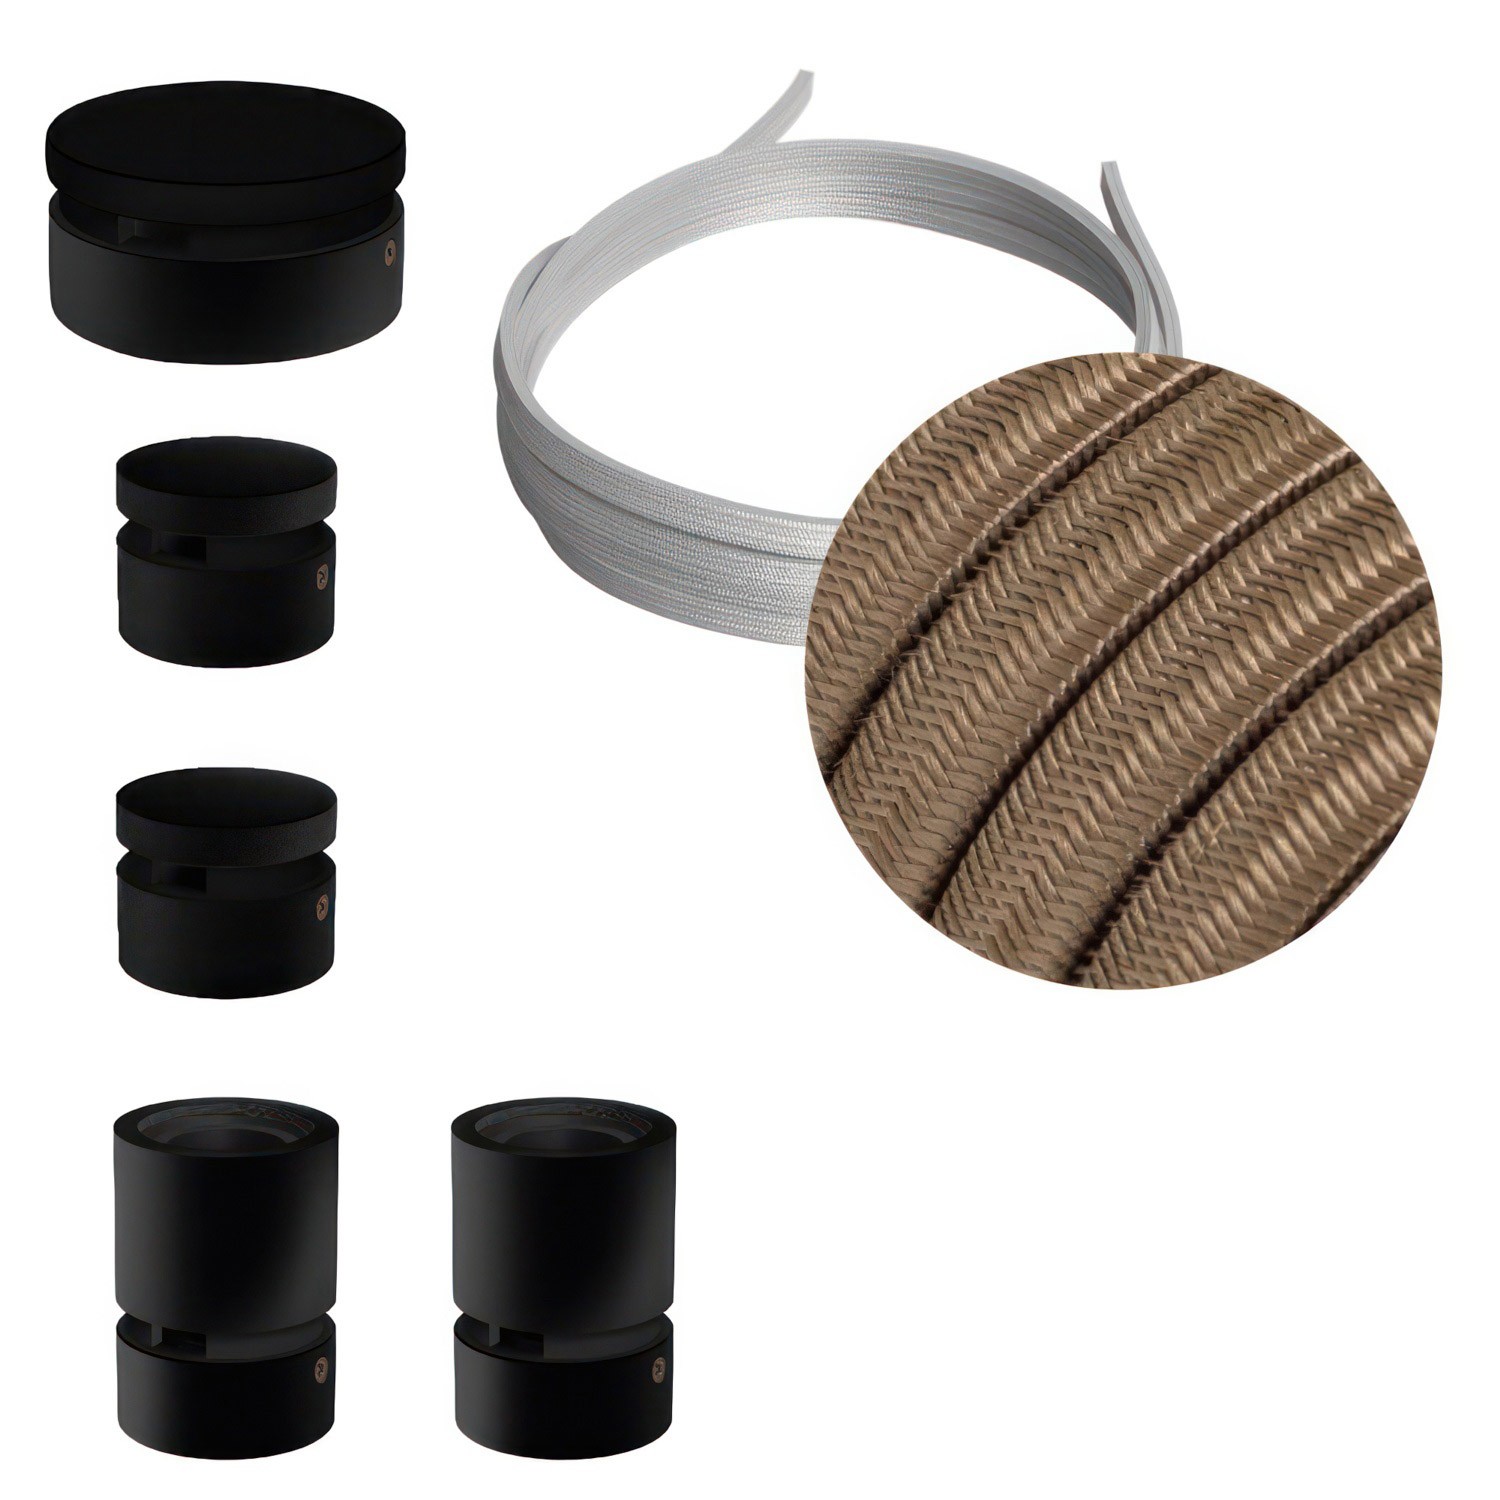 Filé systém - zostava pre cik-cak inštaláciu - 3m kábla pre svetelné šnúry a 5 čiernych lakovaných drevených komponentov